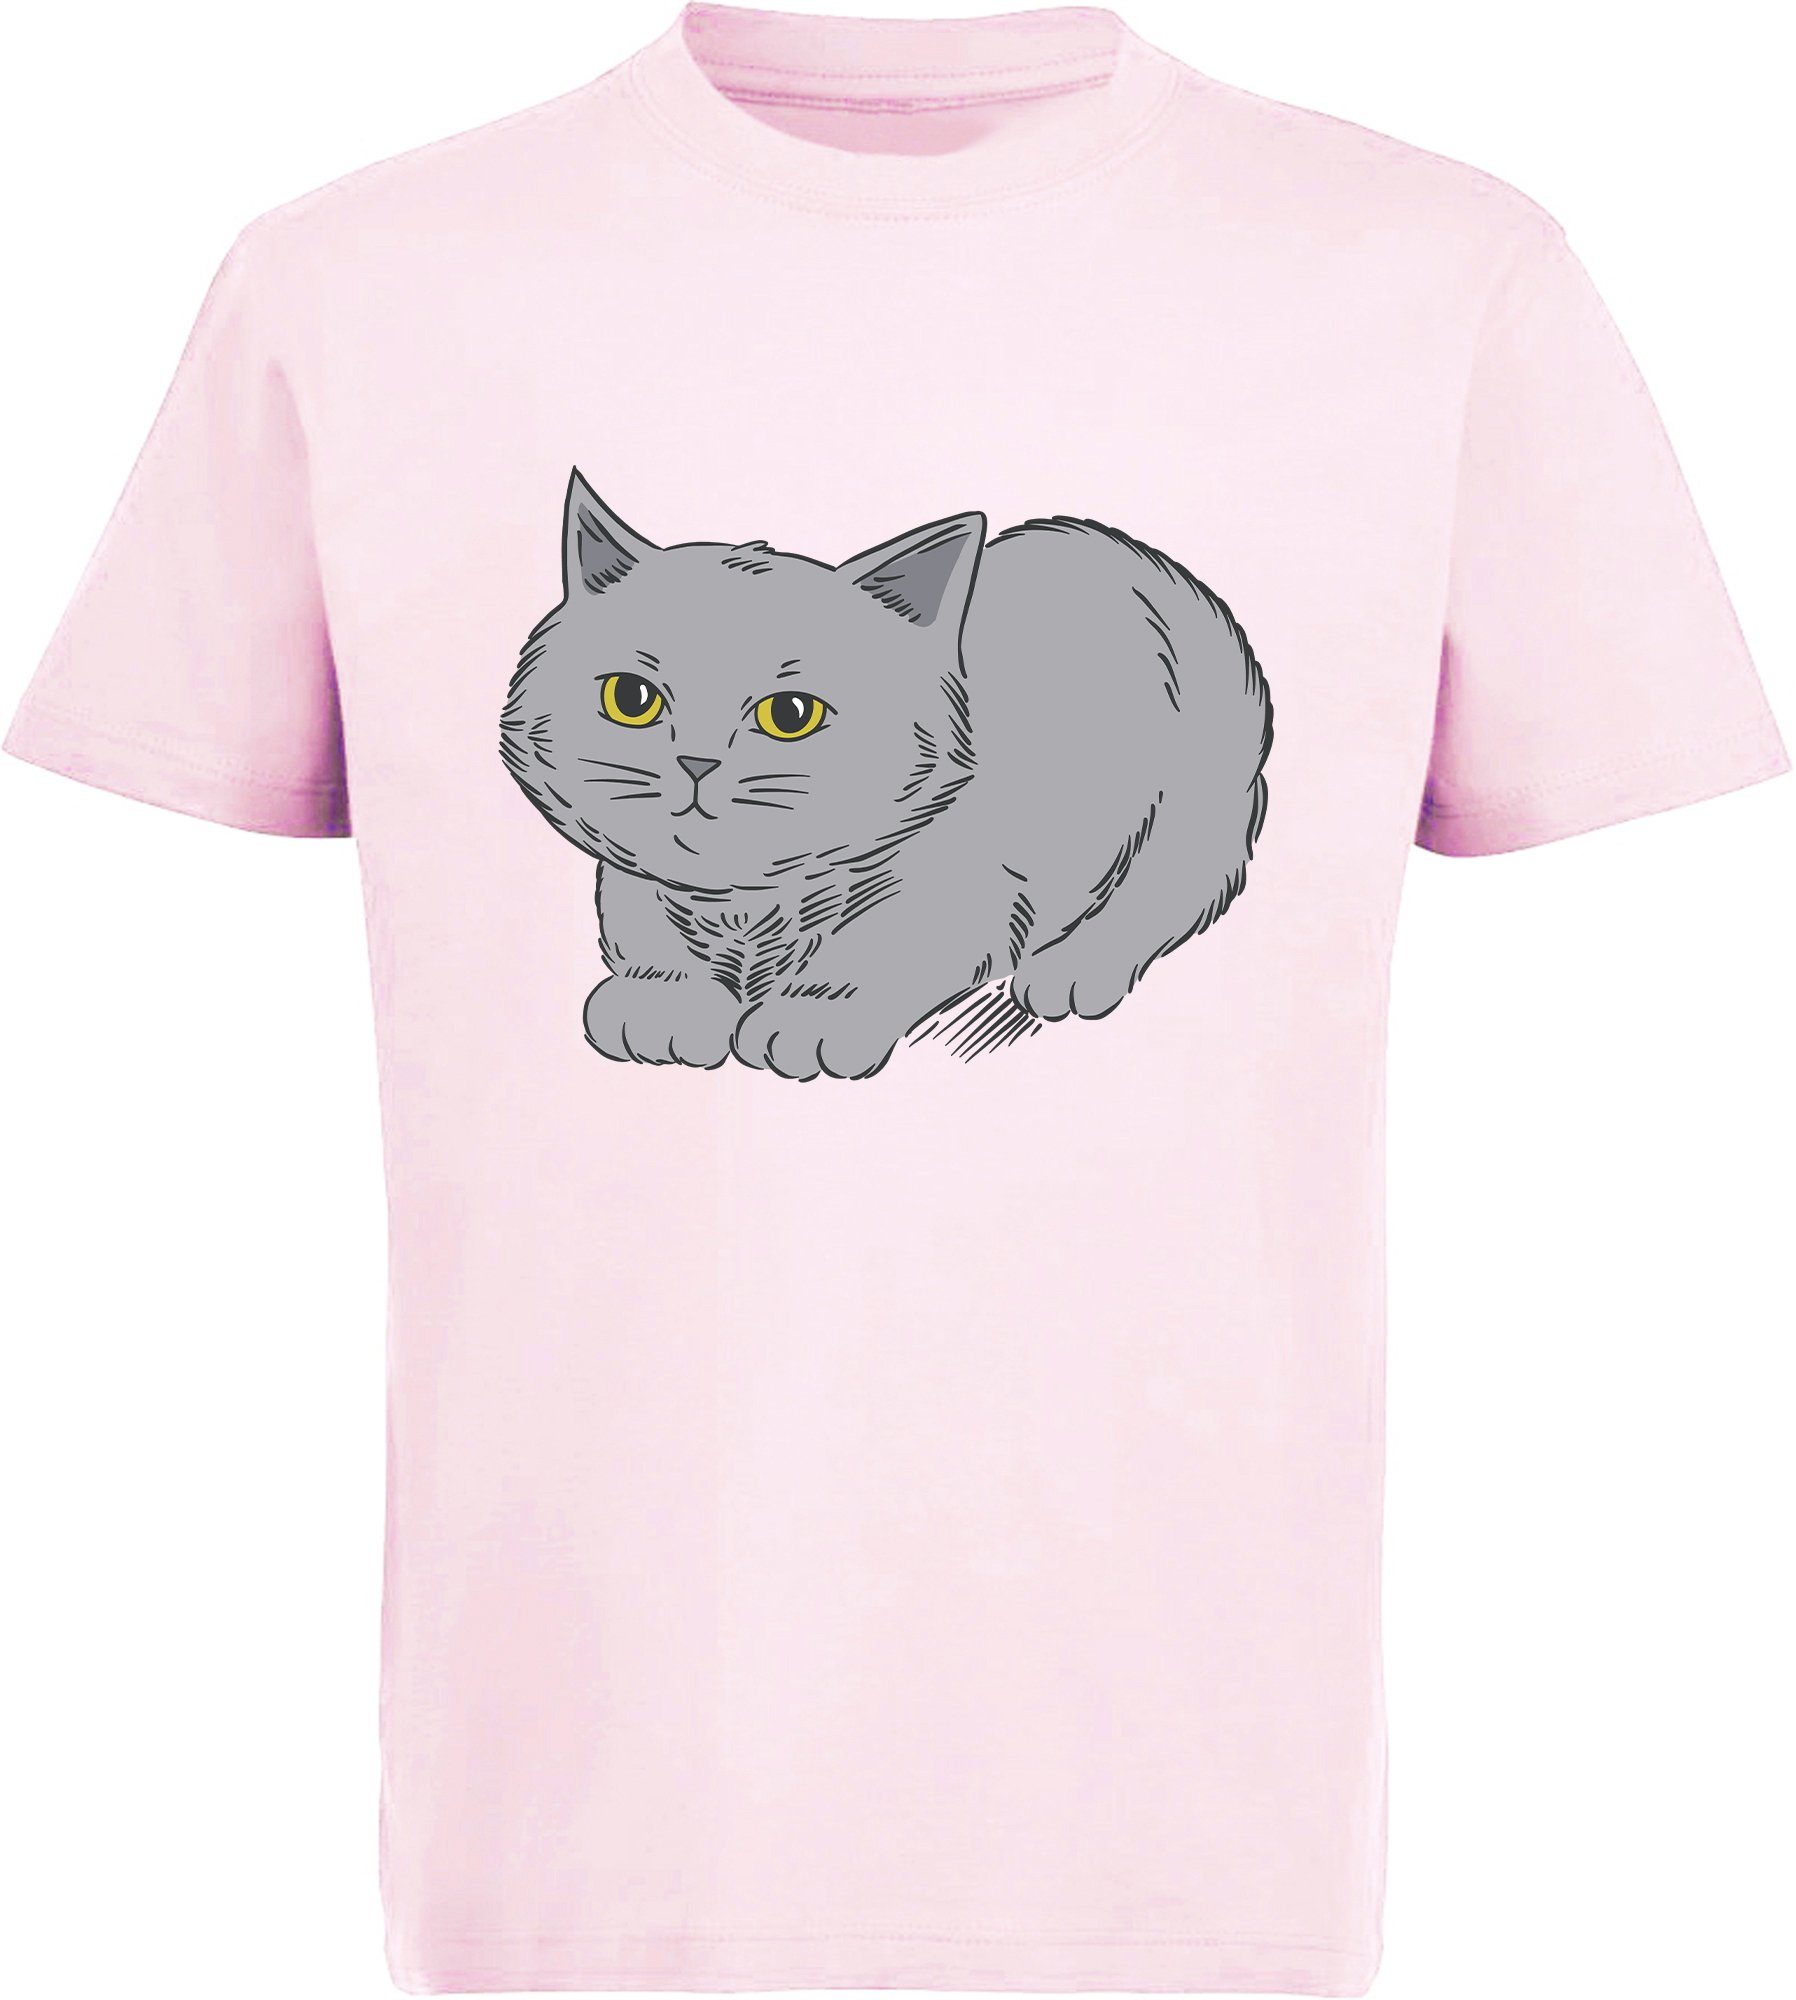 schwarz, grauen mit MyDesign24 Mädchen T-Shirt Katze, bedrucktes rosa, Katze rot, i107 niedlicher weiß, mit Print-Shirt Baumwollshirt